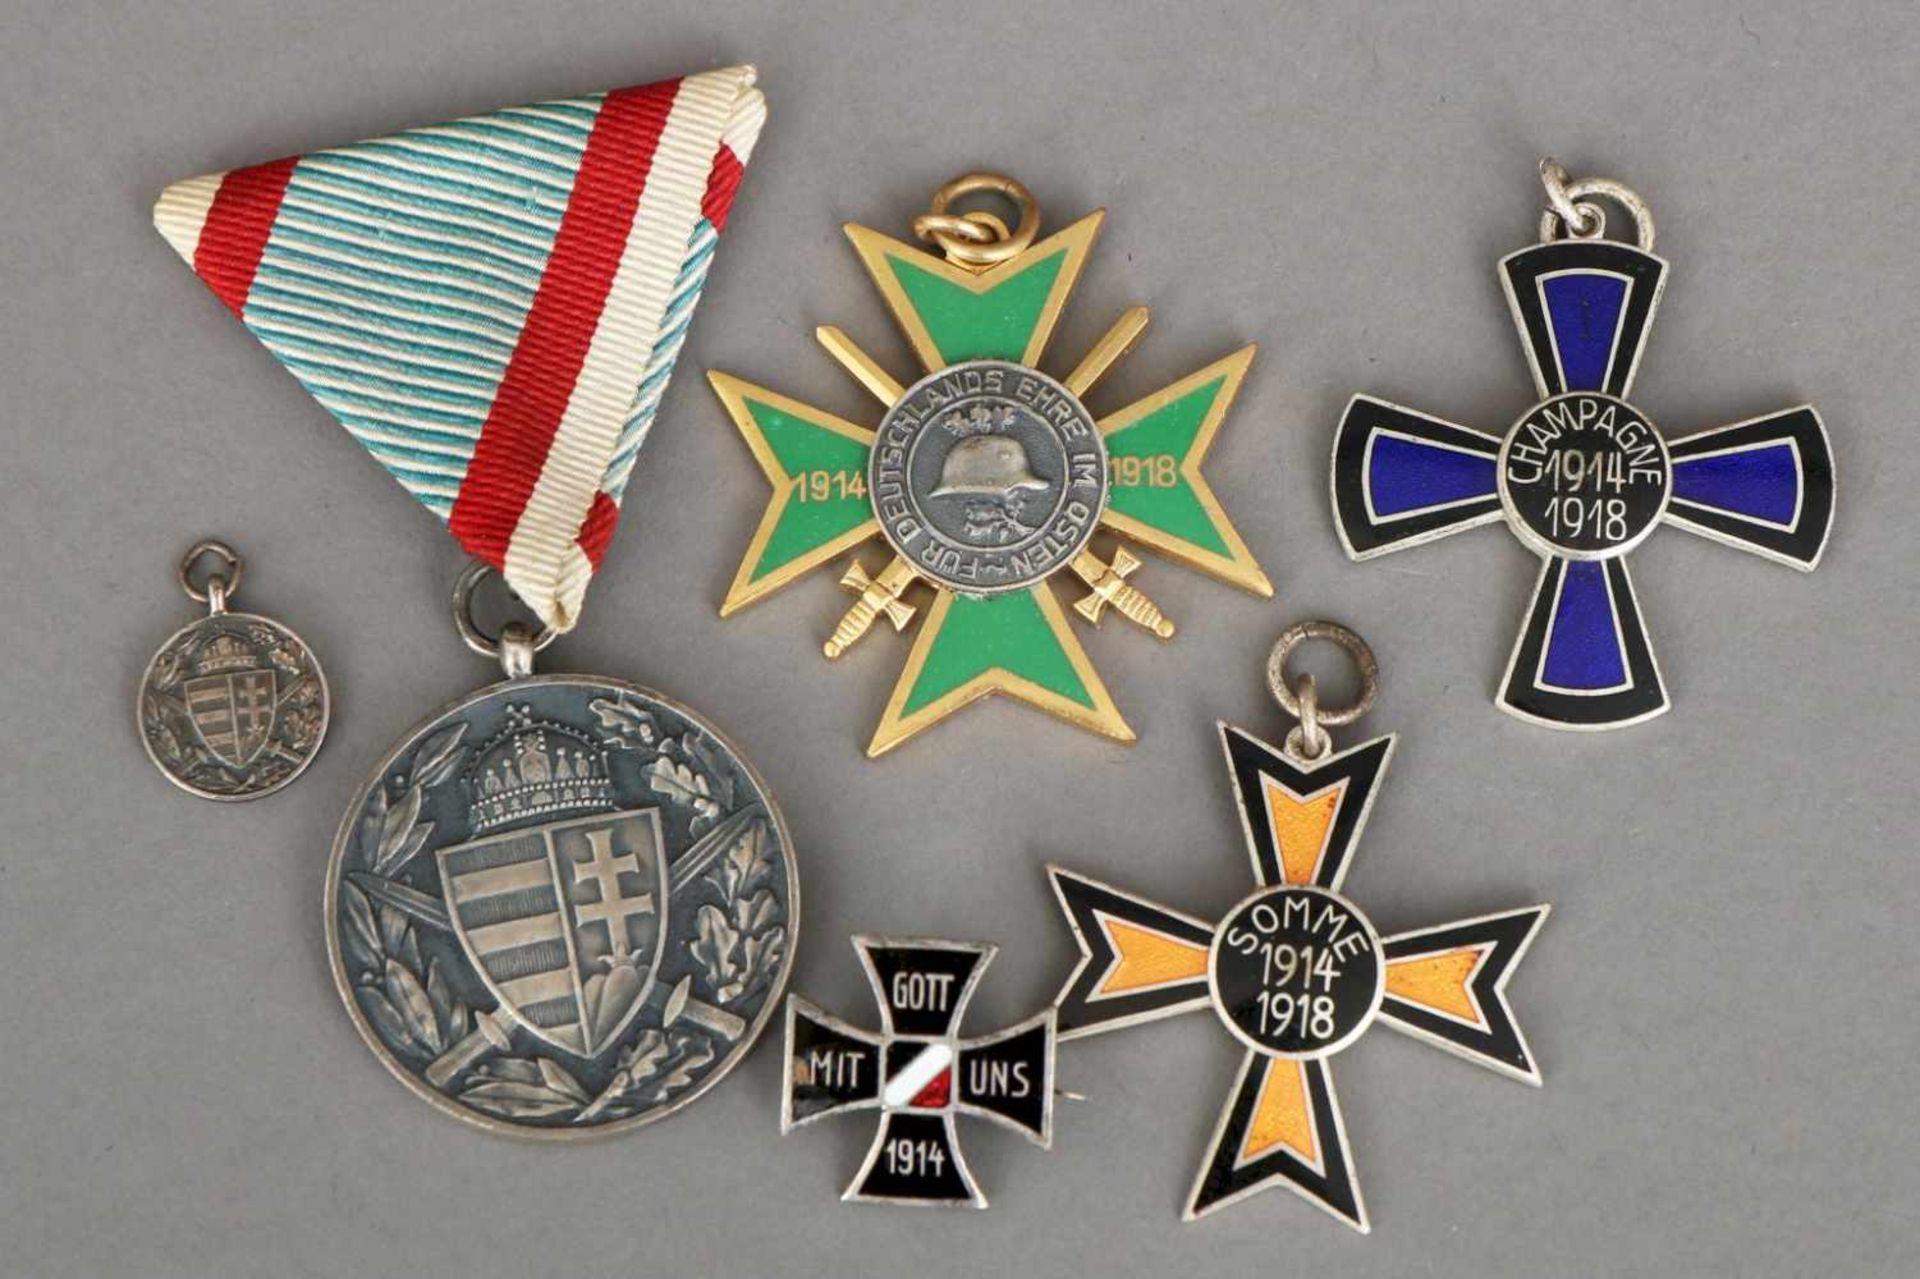 3 Ehrenkreuze des Ehrenbundes sächsischer Weltkriegsteilnehmeru.a. Somme-Kreuz, Champagne-Kreuz